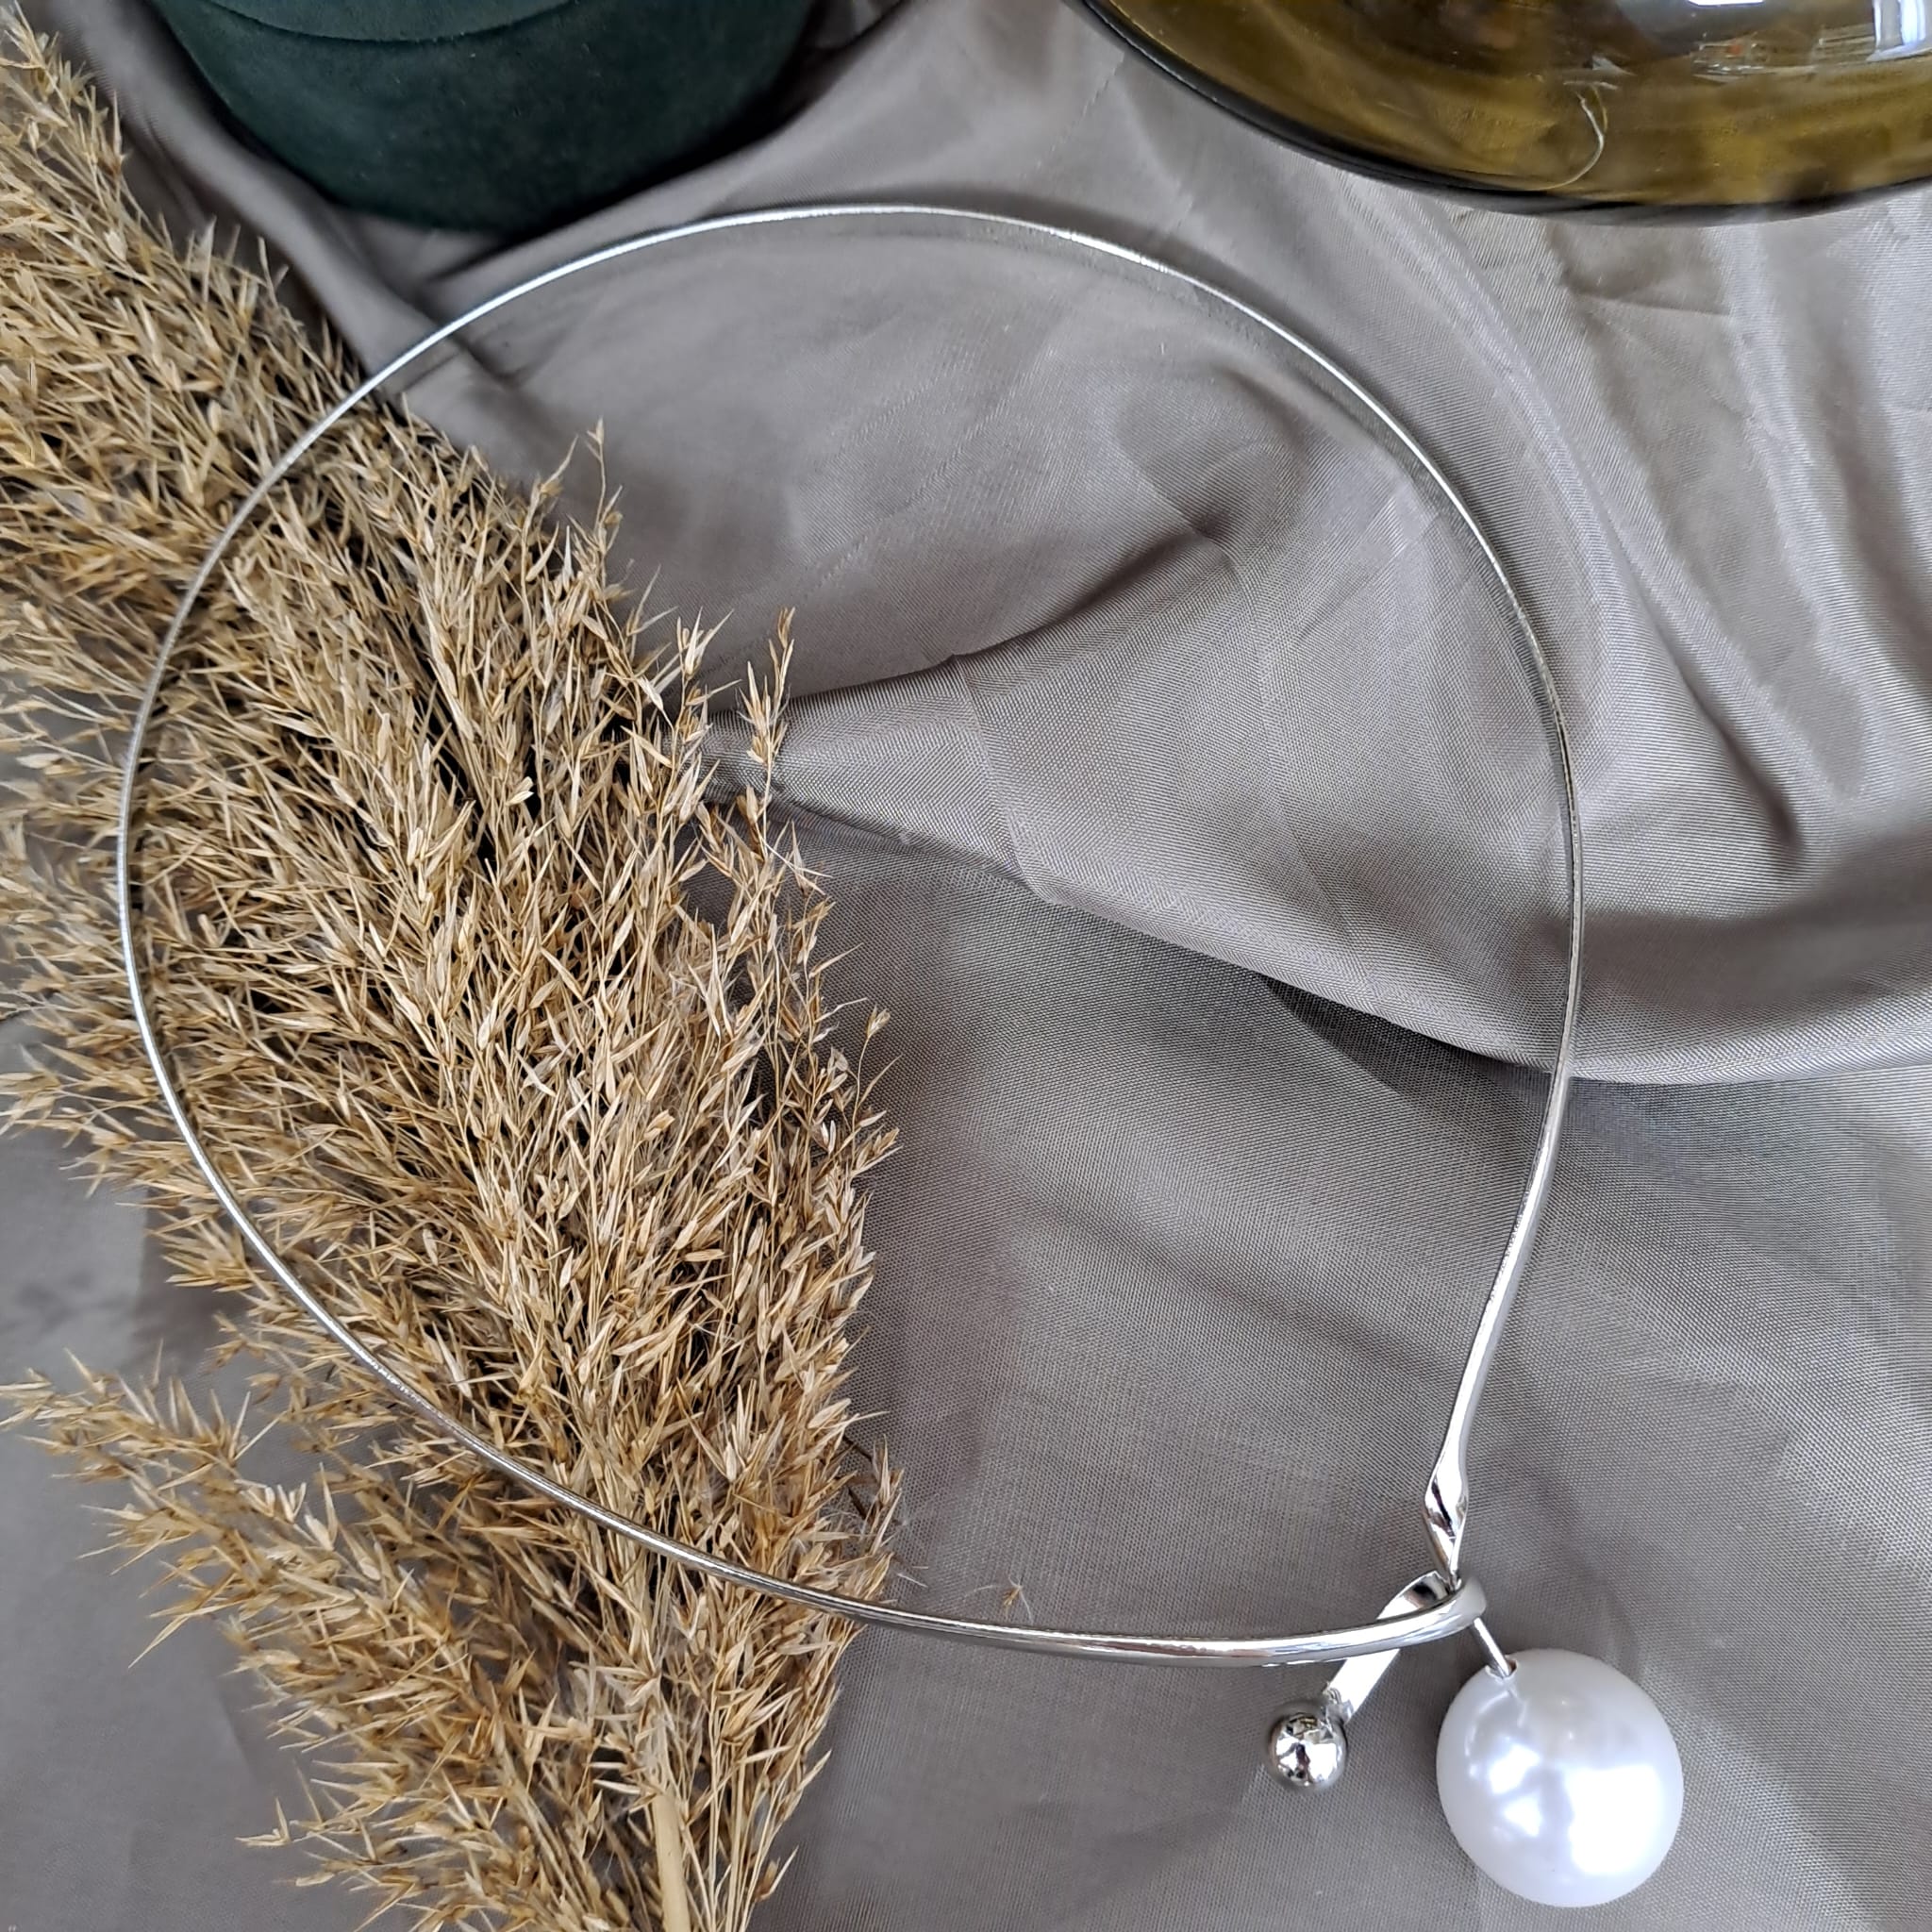 Colier argintiu, din sarma indoita, cu perla, Adrina C11